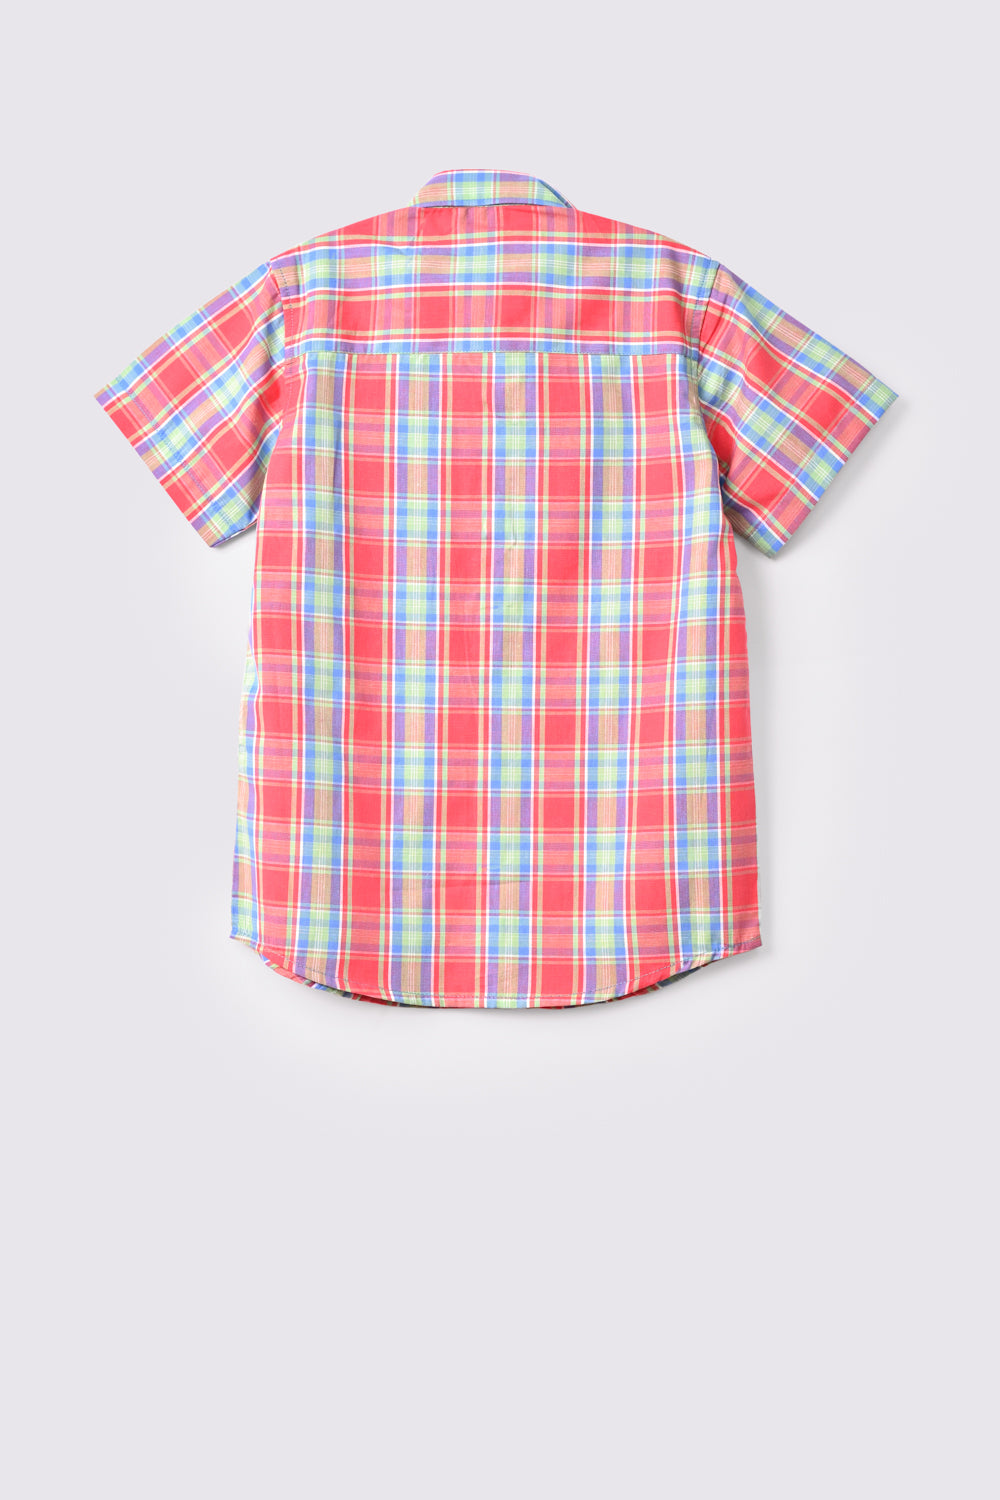 Boy's Casual Shirt